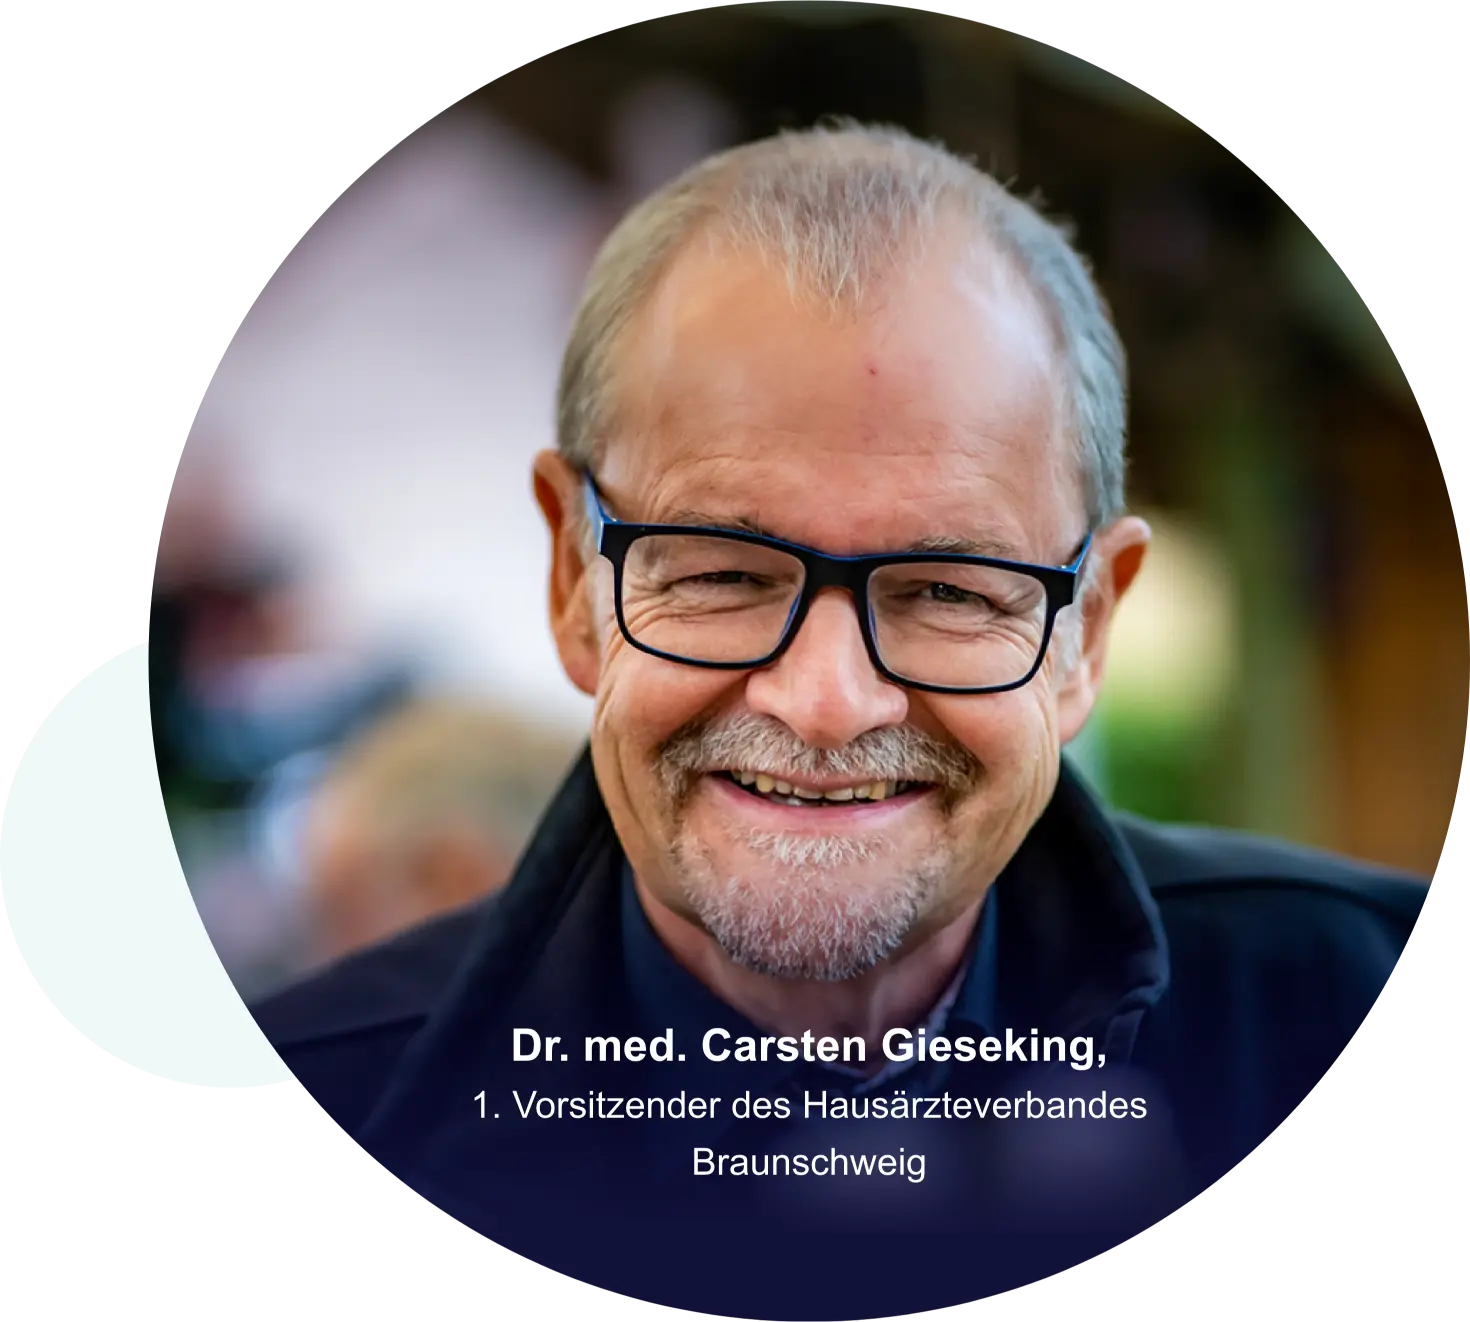 Dr. med. Carsten Gieseking